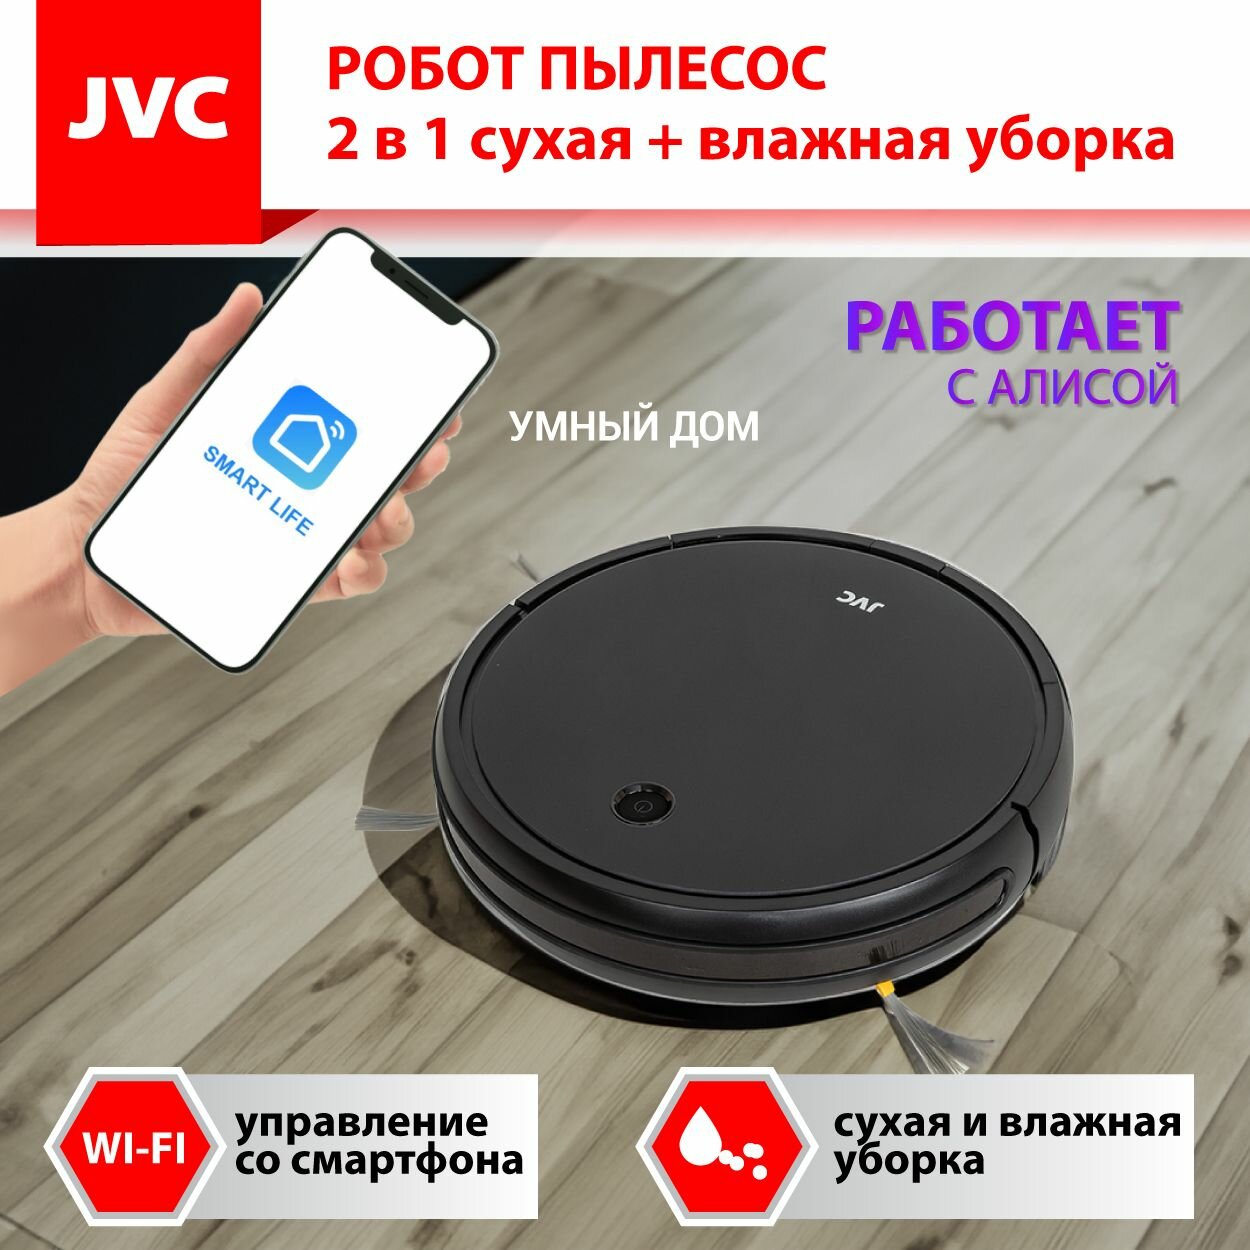 Робот - пылесос JVC JH-VR510 black 2 в 1 сухая и влажная уборка, 4 режима, турбощетка, 3 мощности, HEPA фильтр, голосовой помощник, смартфон-управление Smart life, Wi-Fi